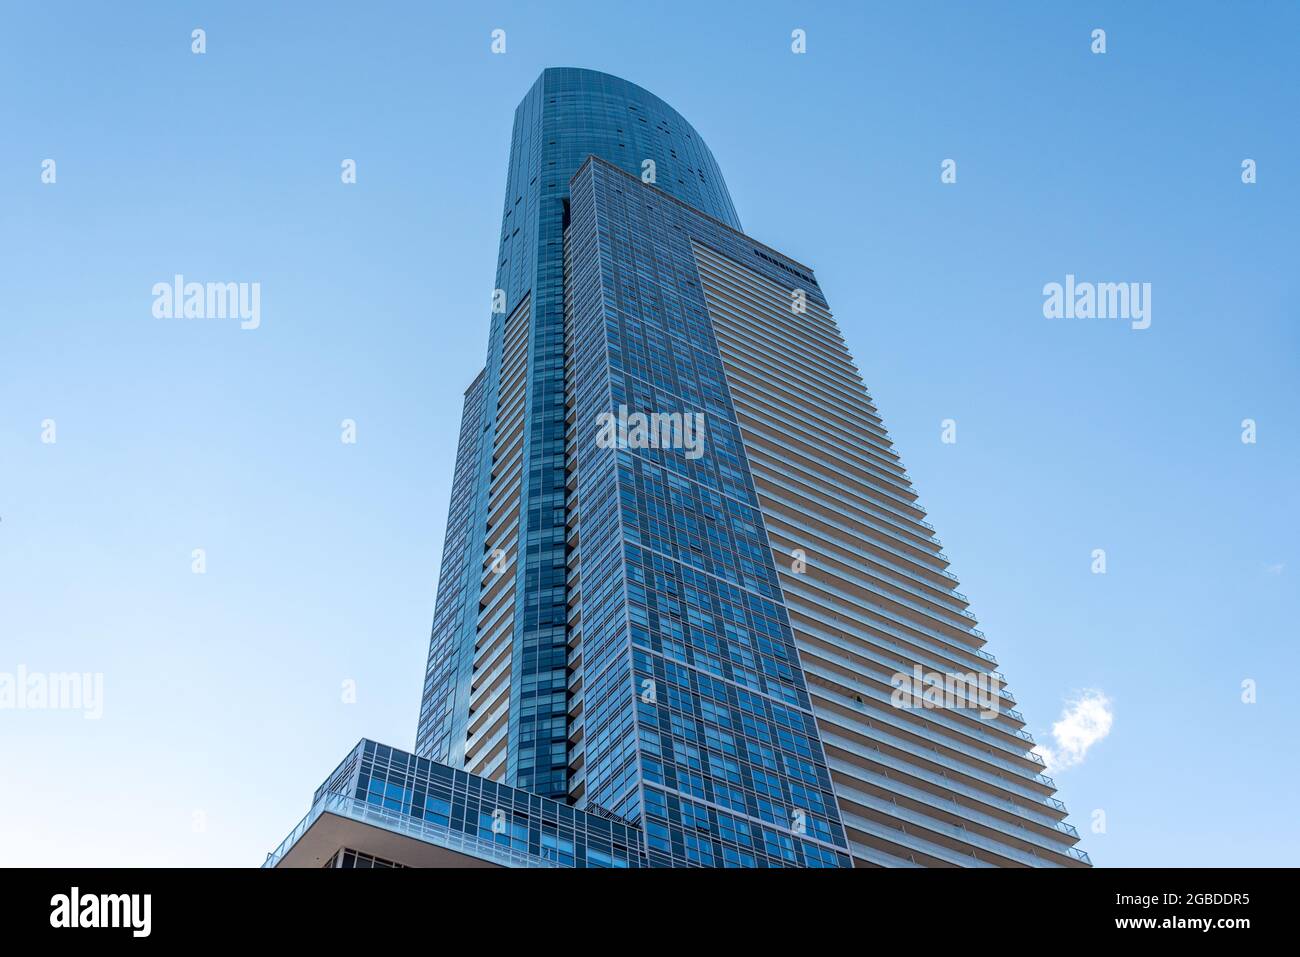 Bâtiment aura. Résumé de l'architecture moderne dans les gratte-ciel du quartier du centre-ville de Toronto, Canada Banque D'Images